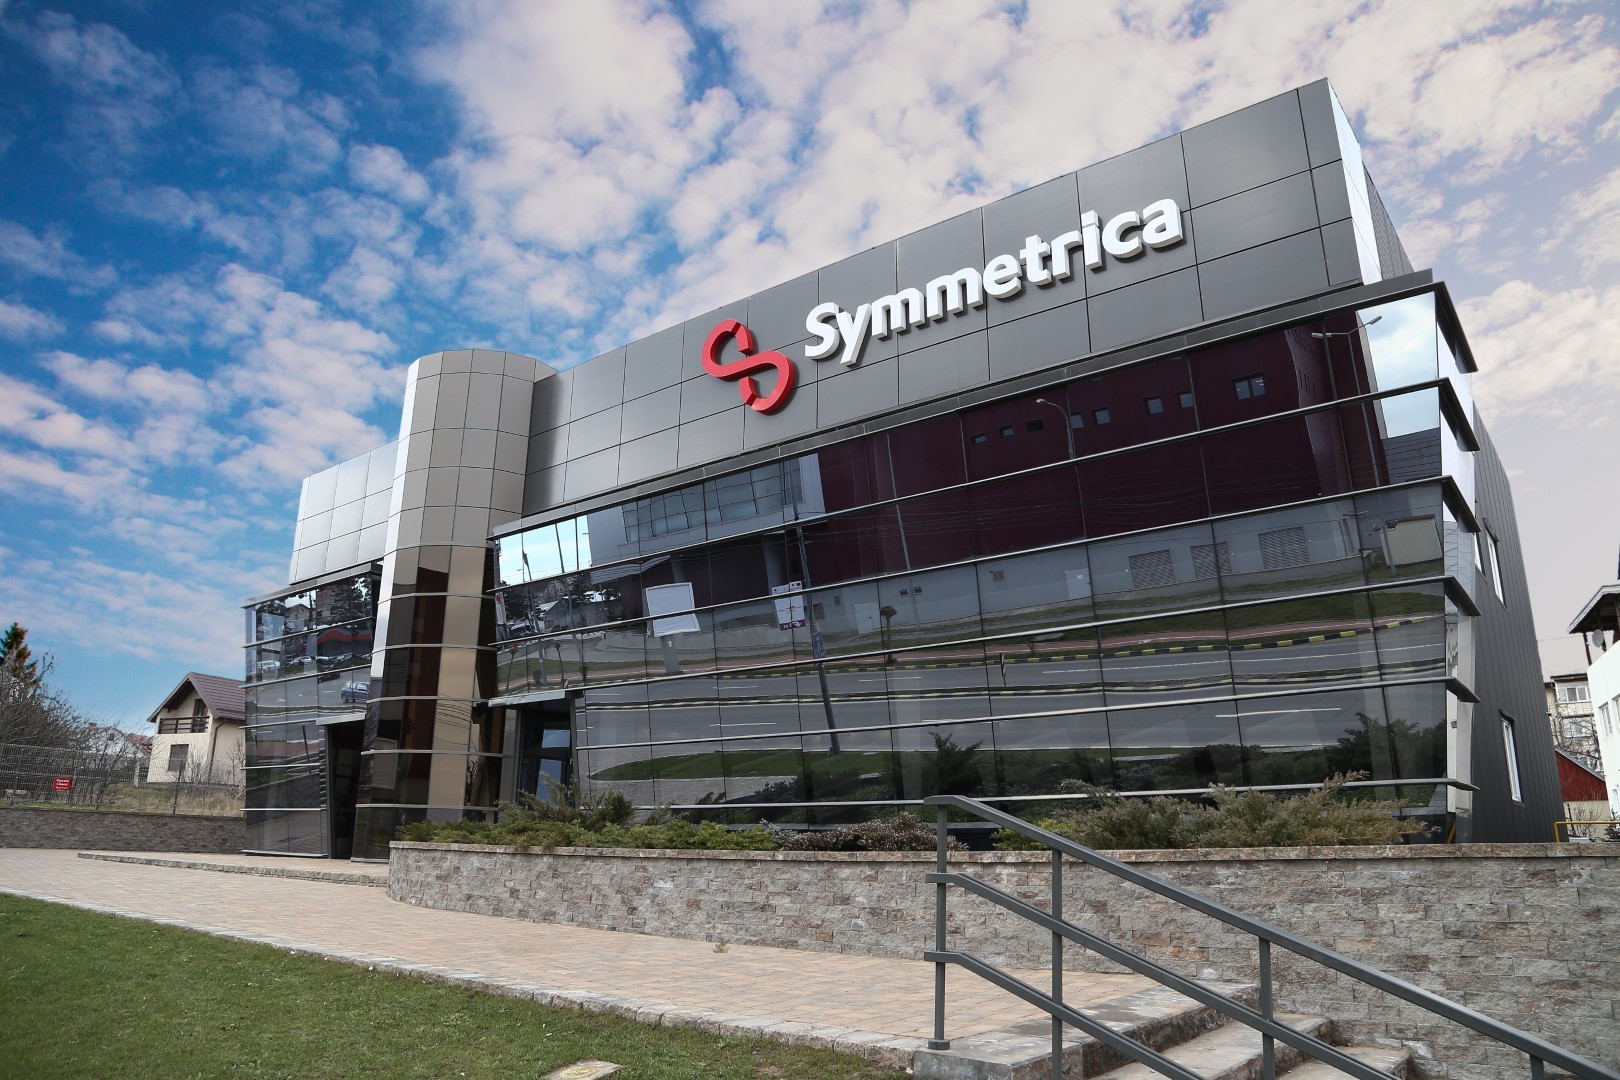 Symmetrica cumpără fabrica Somaco Holding din Doaga, Vrancea, şi anunţă investiţii de 10 milioane de euro până la finalul lui 2023 pentru modernizarea şi dezvoltarea noii unităţi de producţie